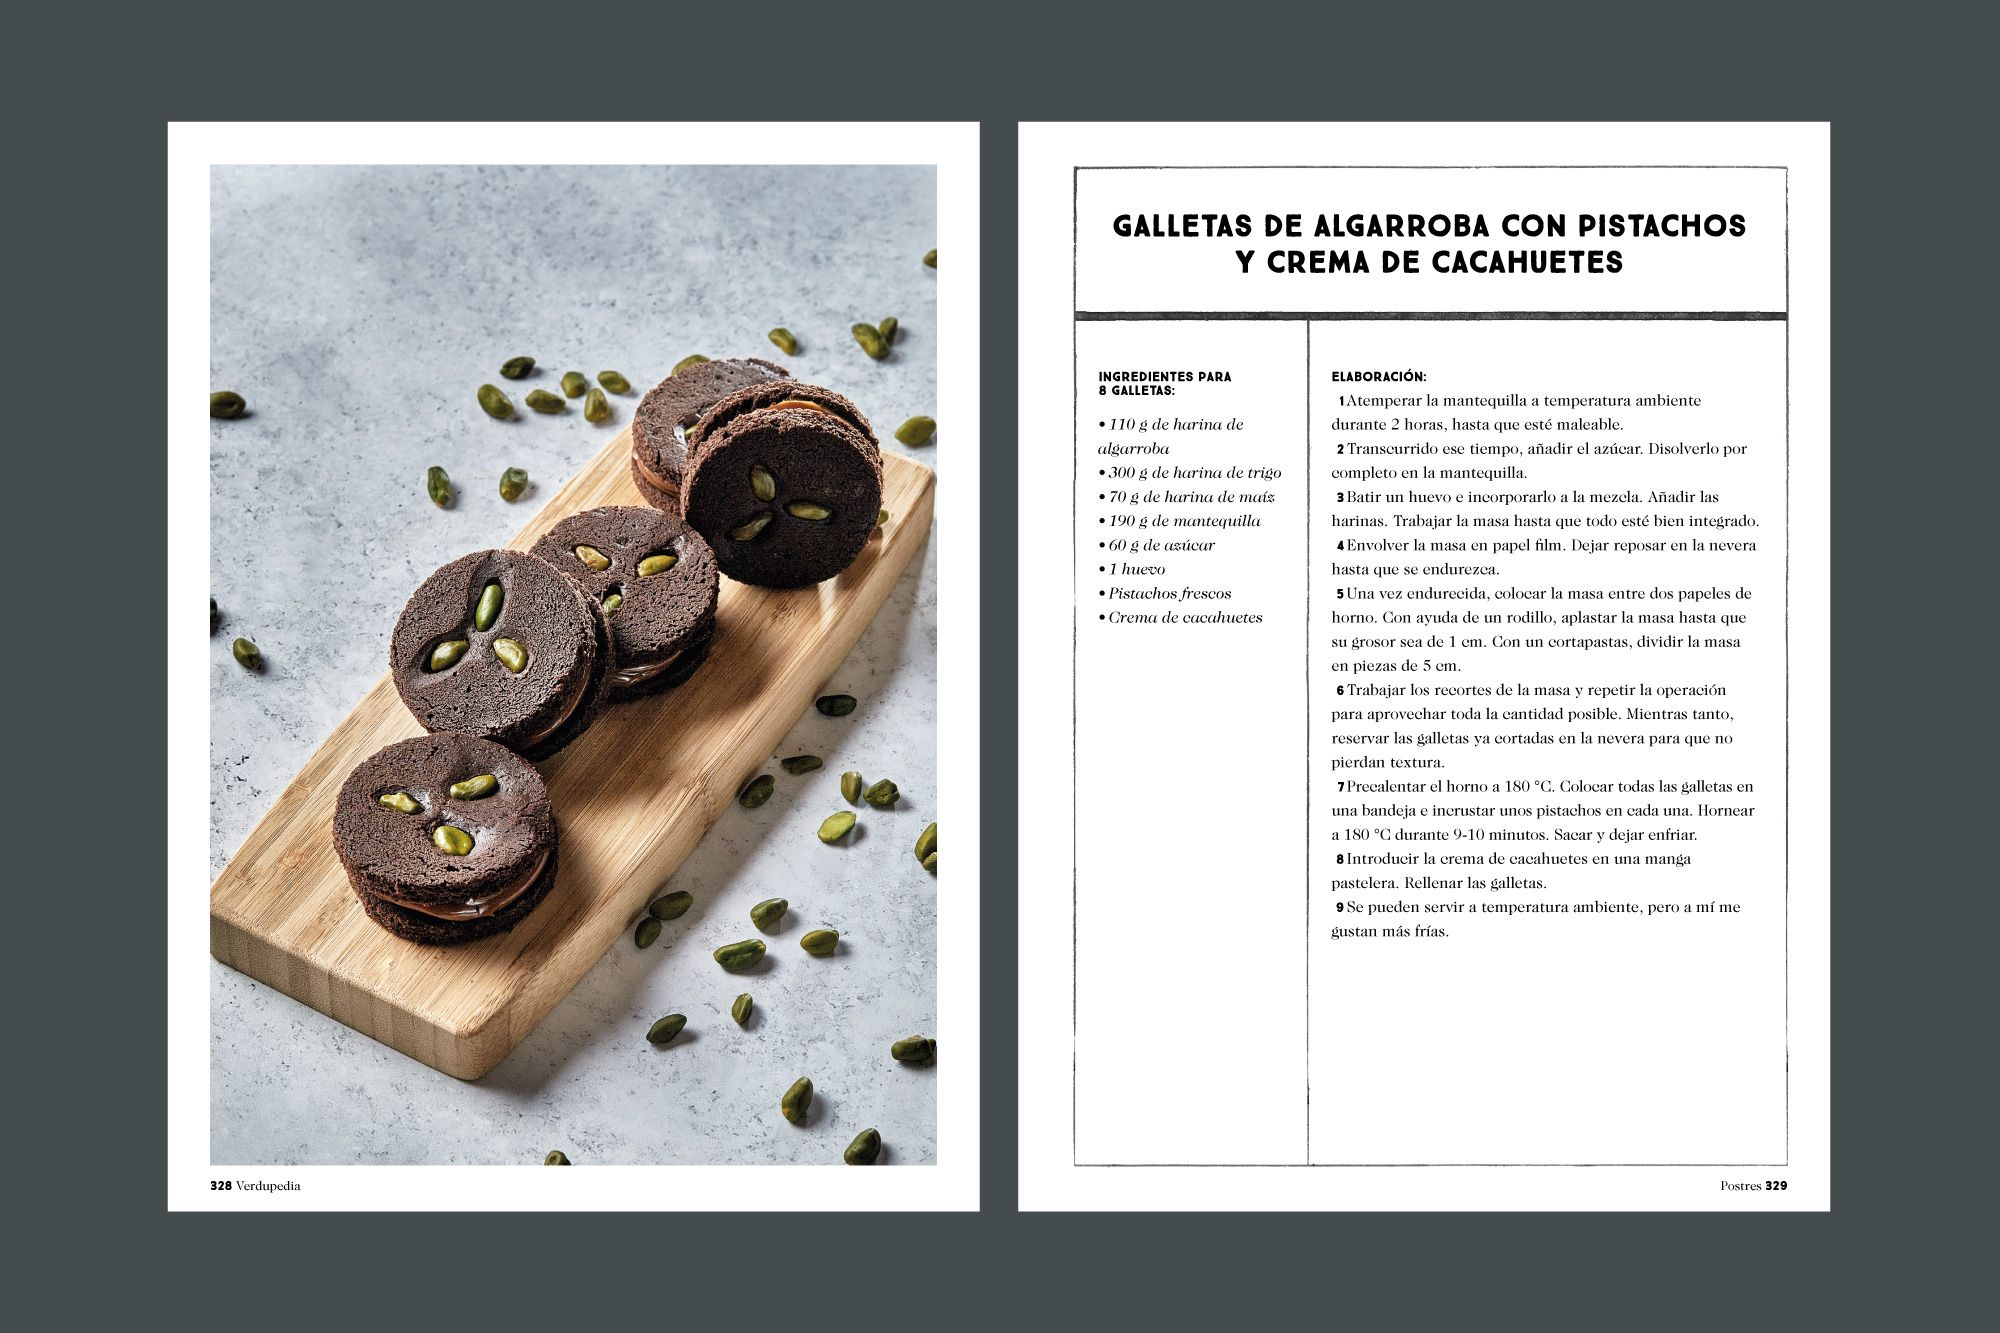 Diseño del libro de cocina de verduras Verdupedia